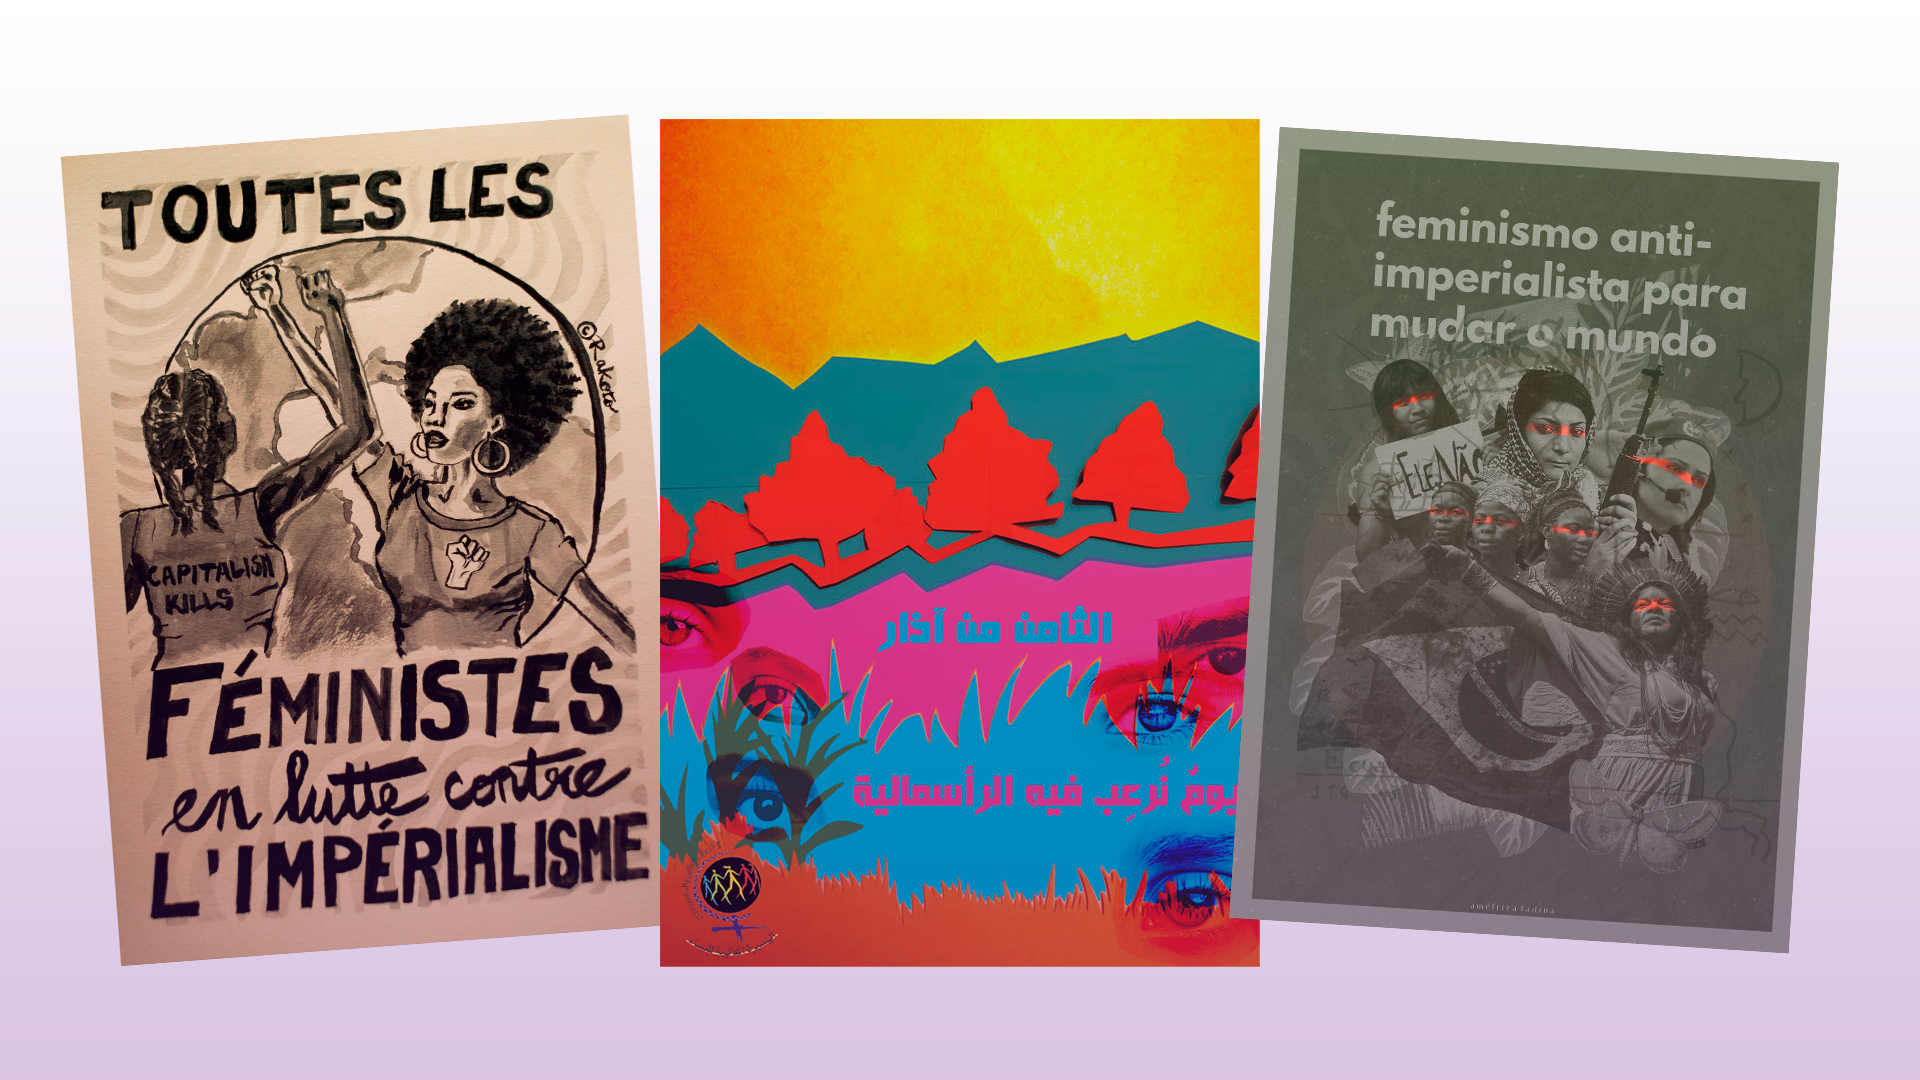 Galería de afiches: feminismo antiimperialista para cambiar el mundo